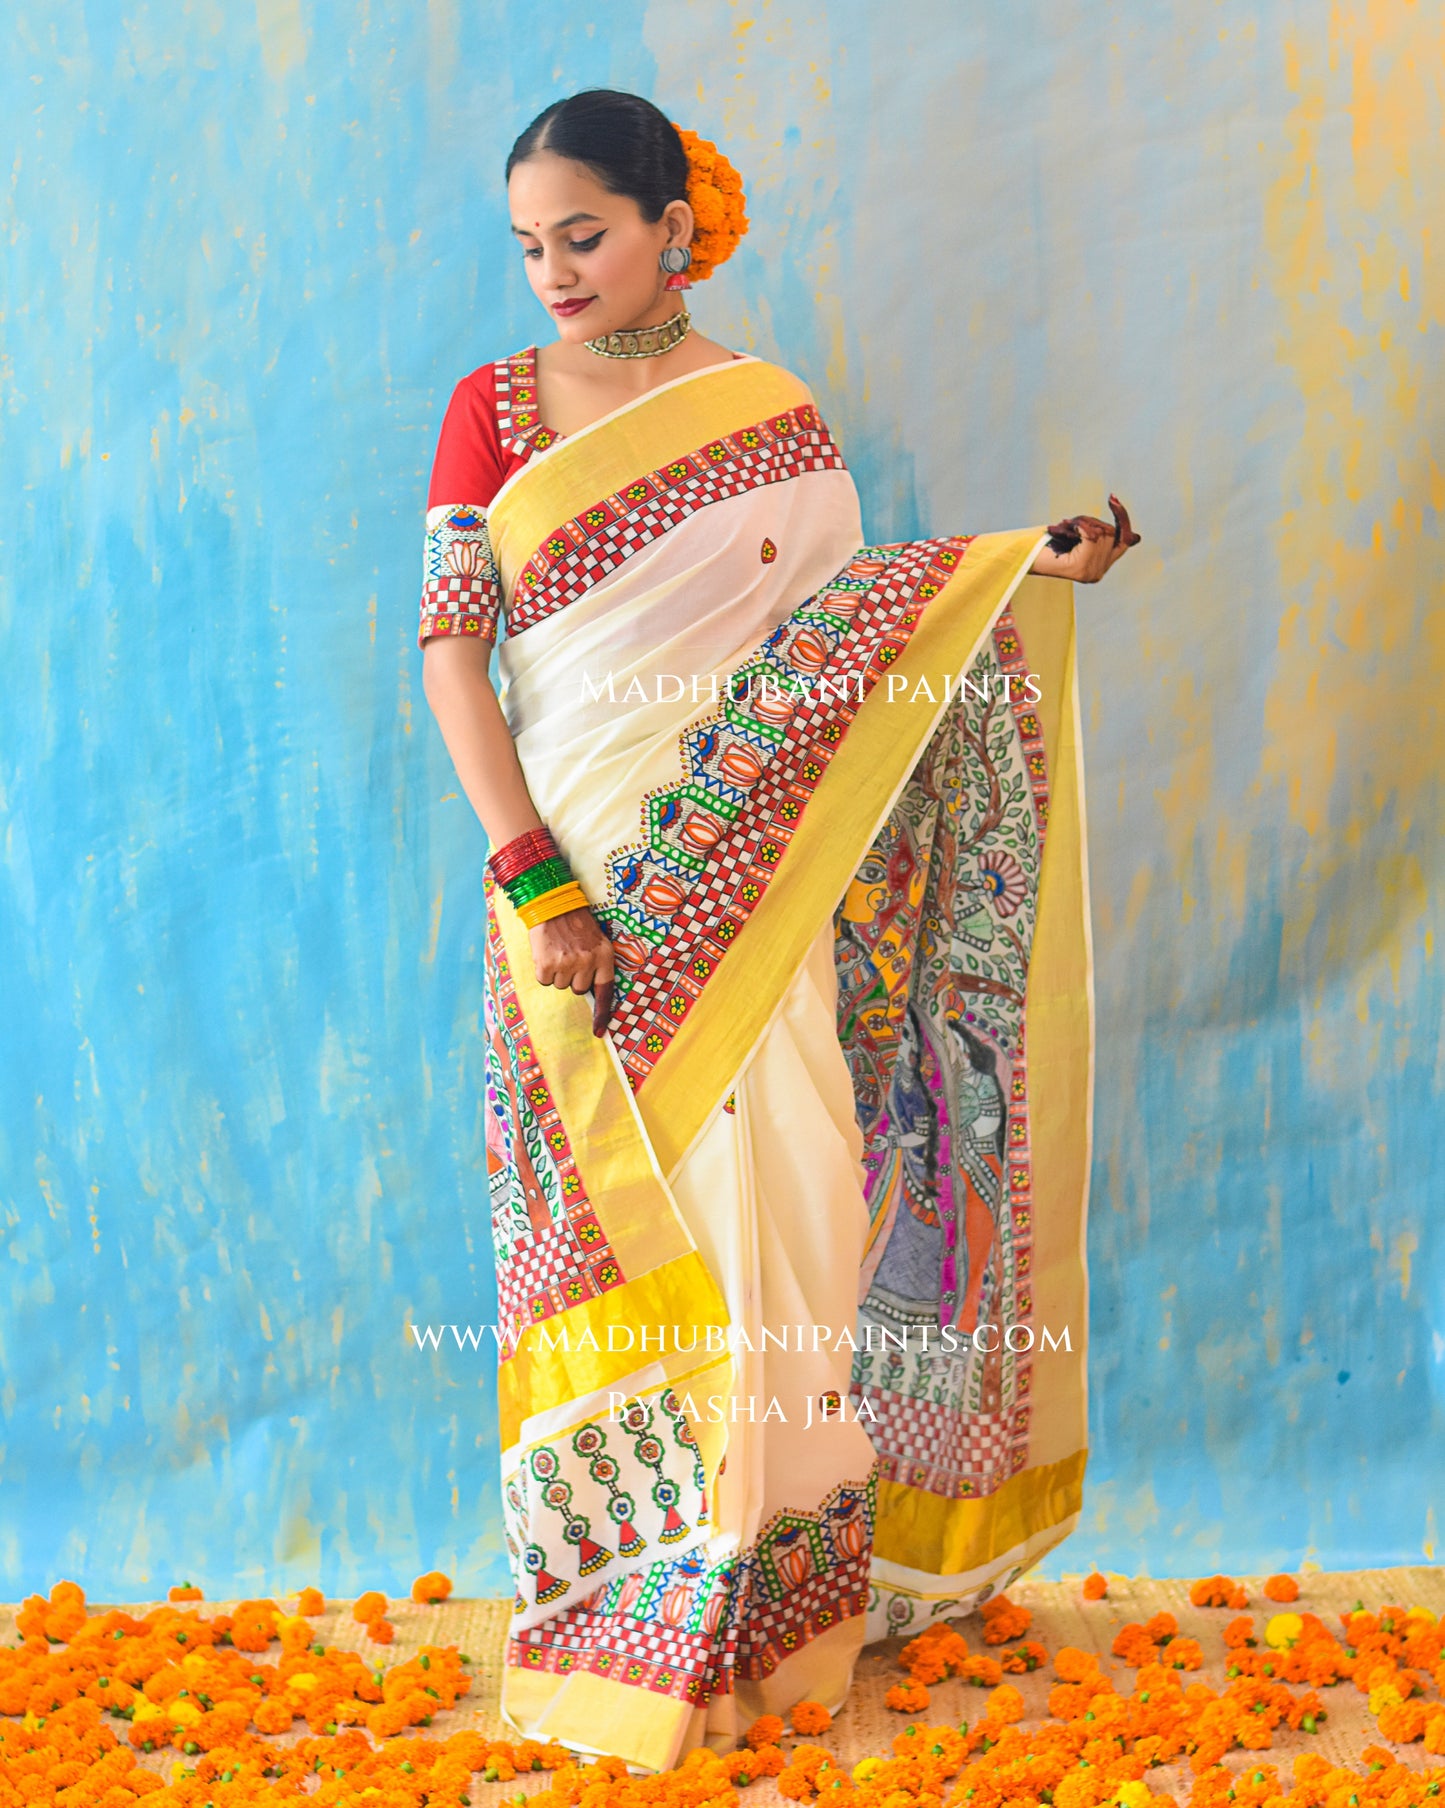 BHAIRAVI Hand-painted Madhubani Handloom Cotton Saree